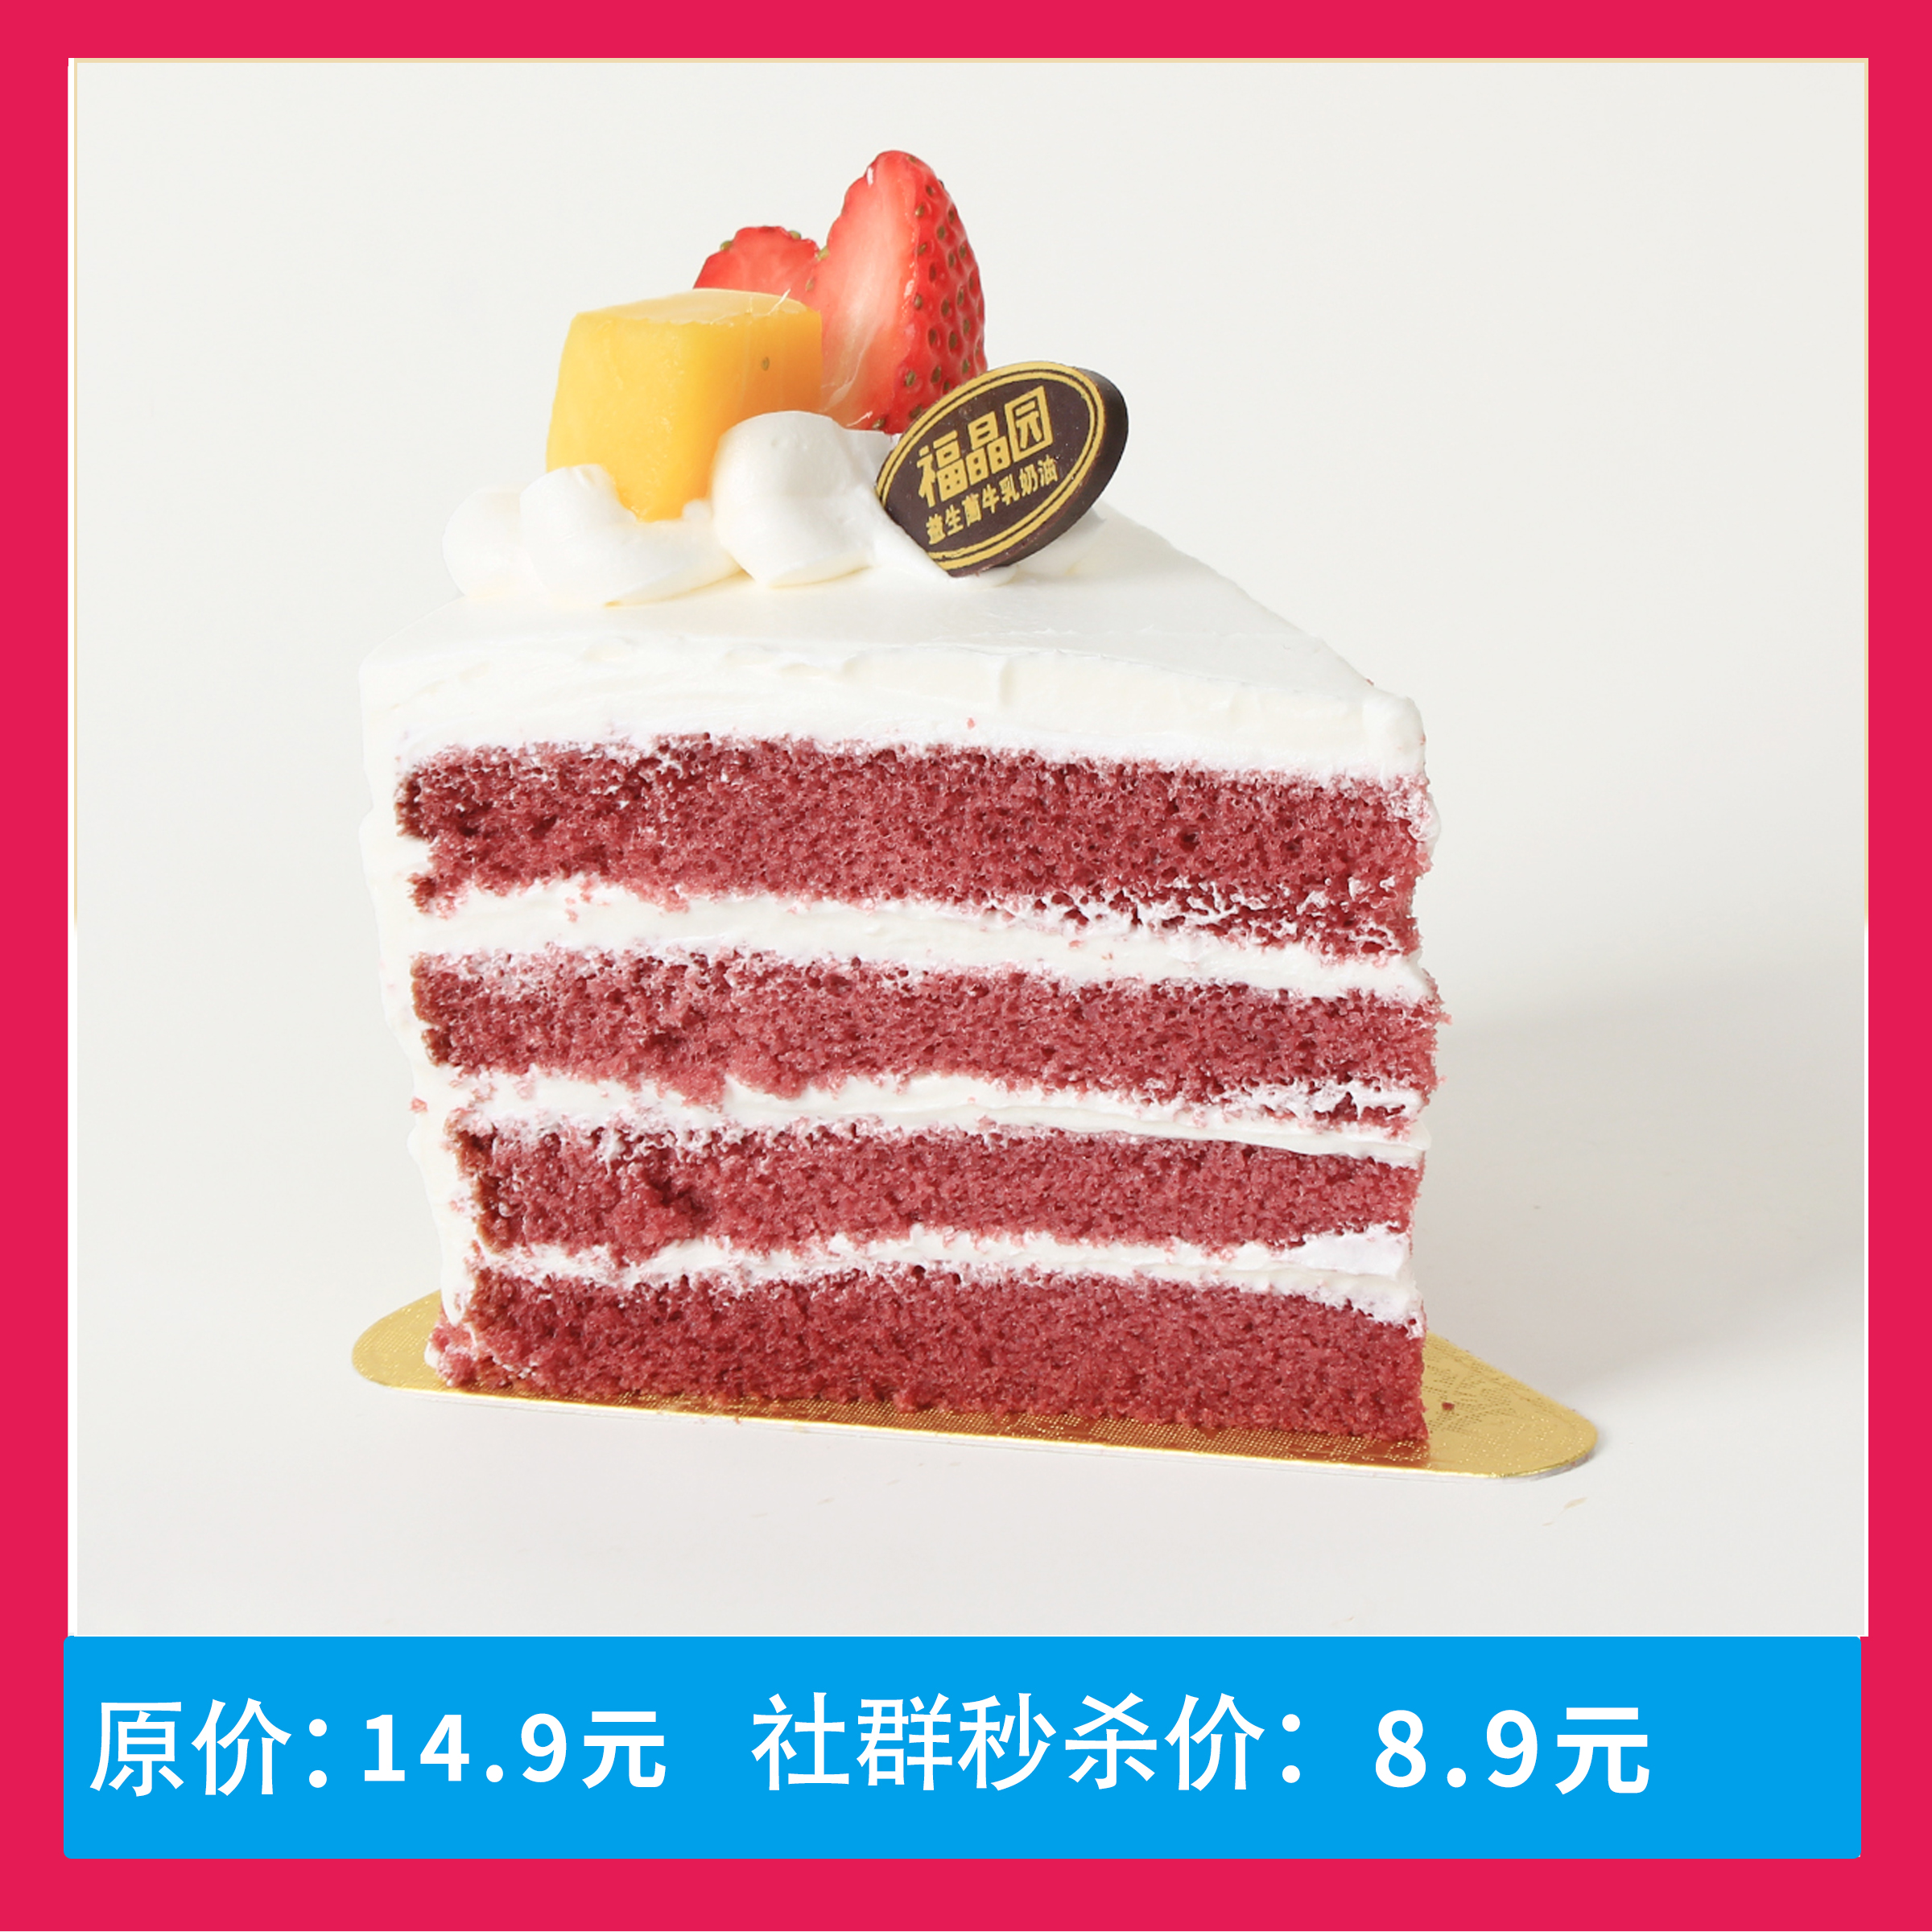 【社群专属8.9元秒】红丝绒蛋糕切块